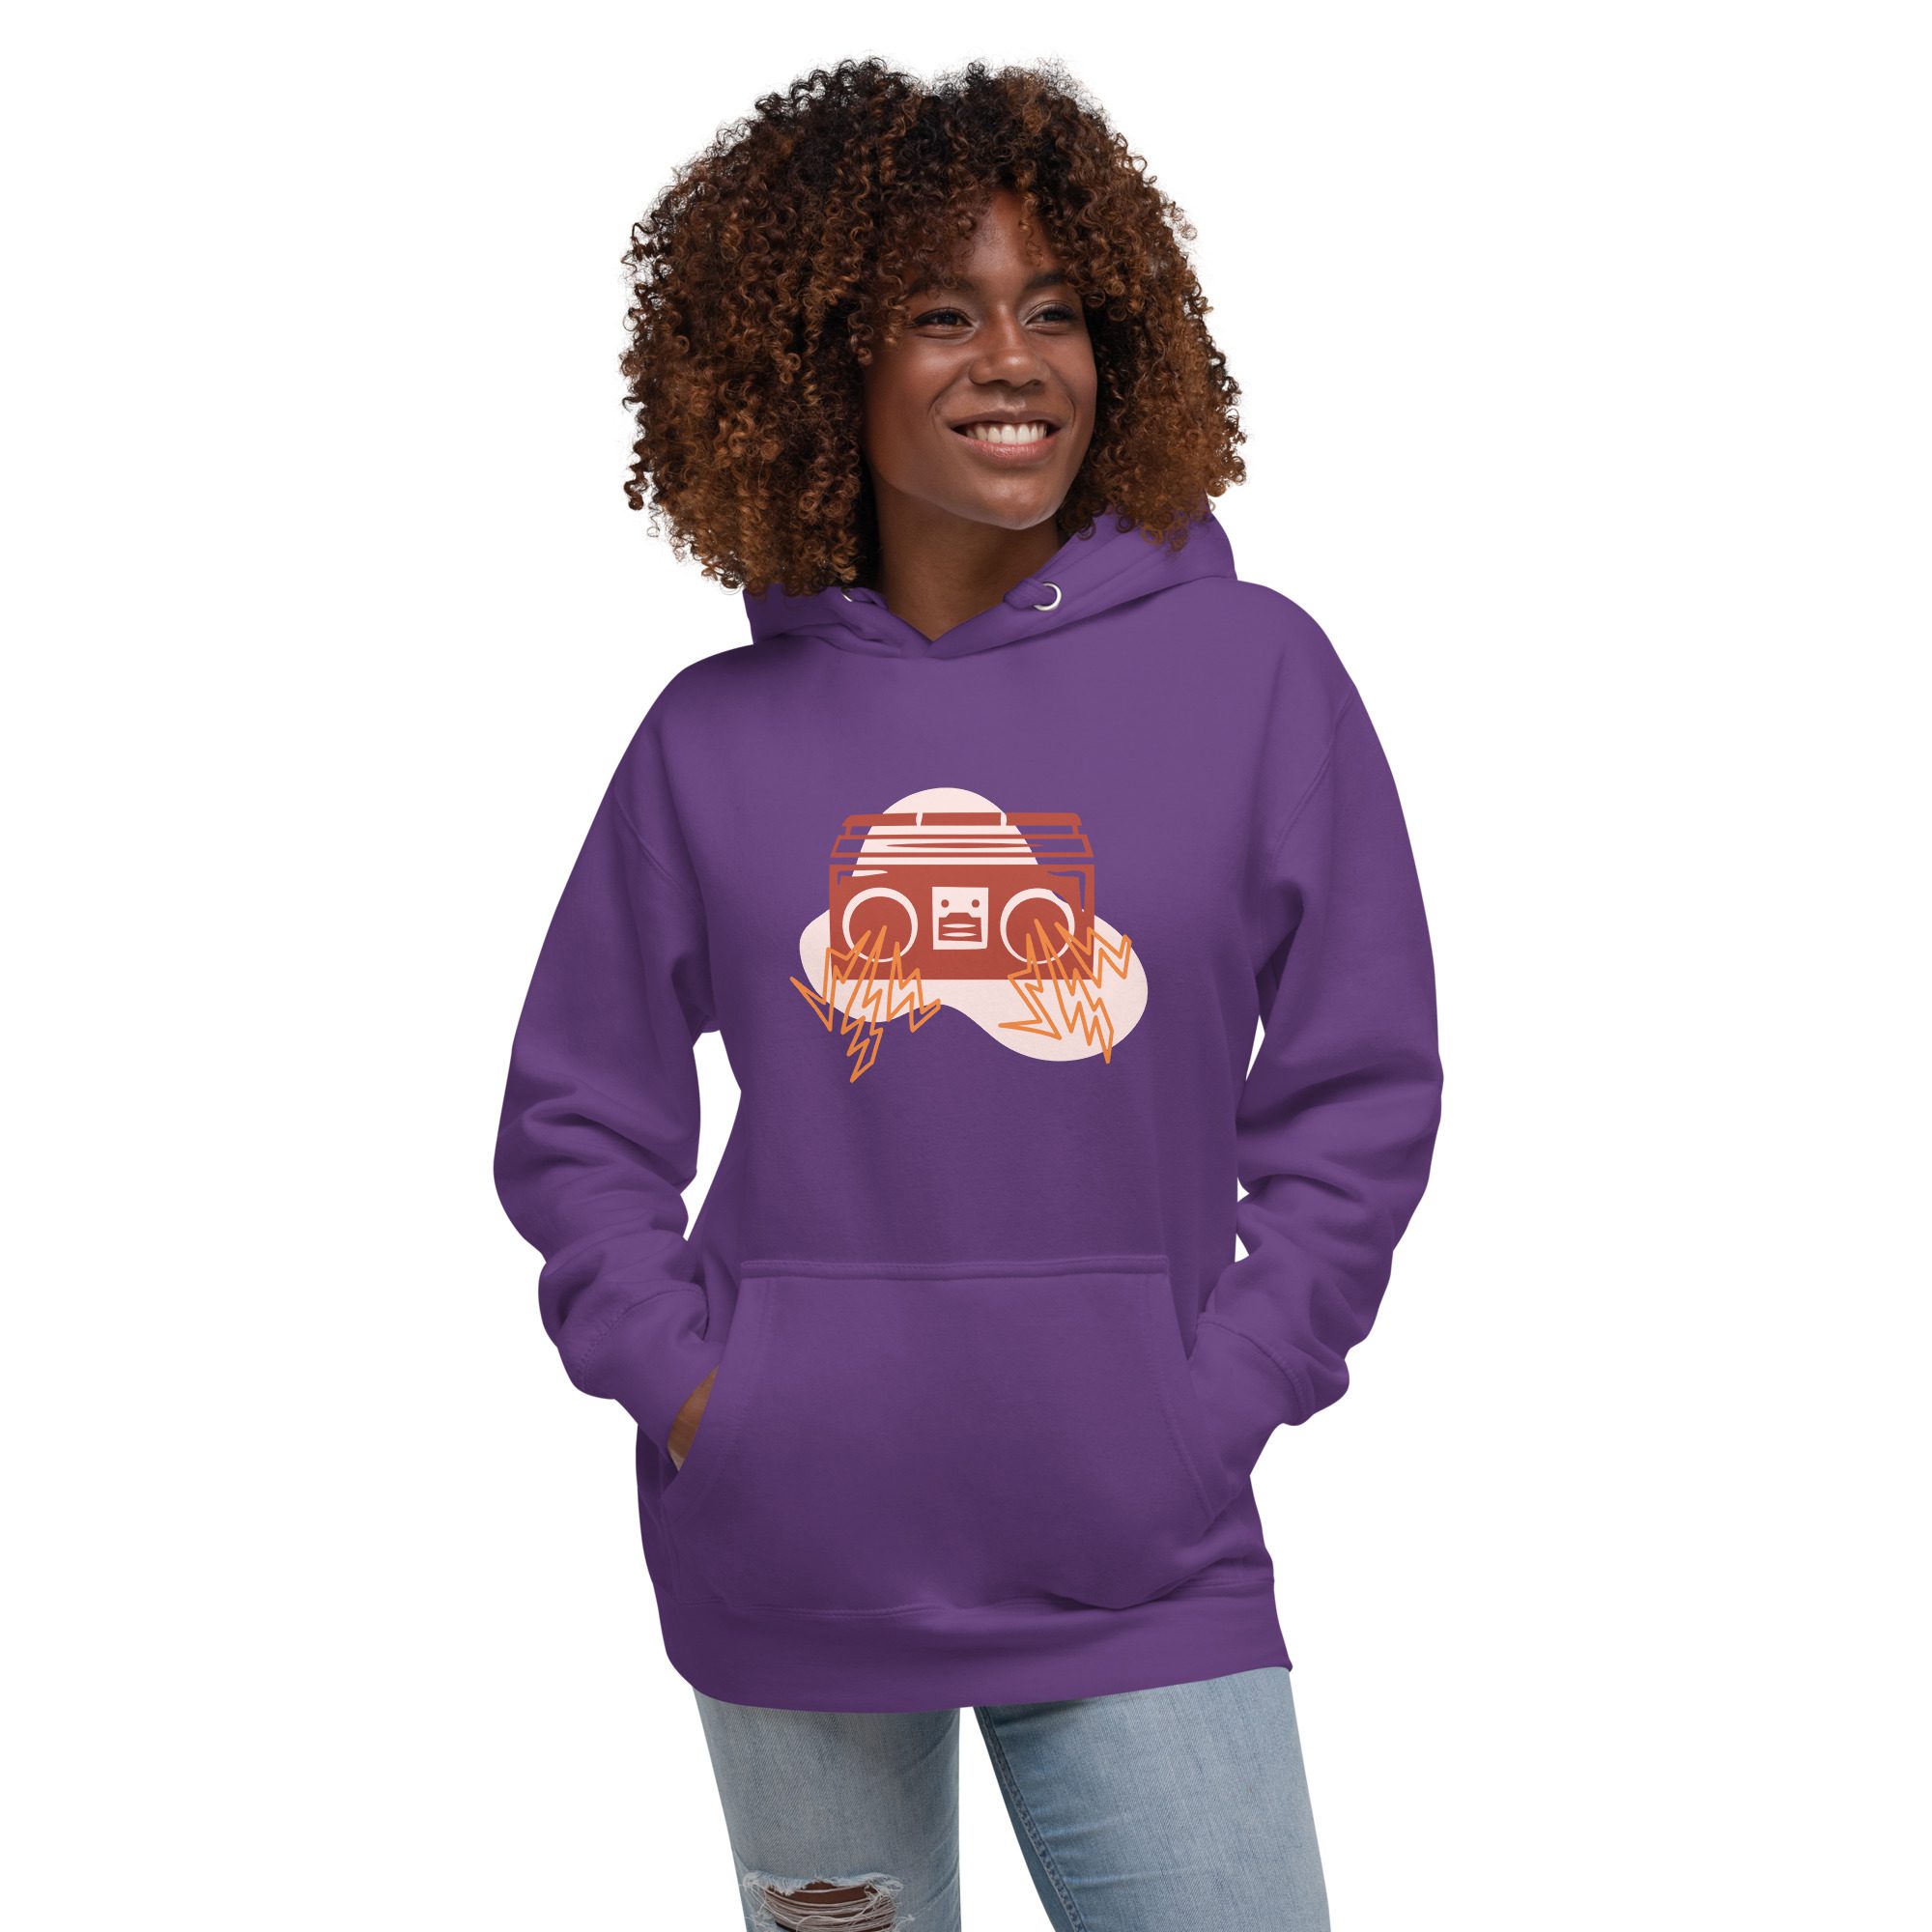 unisex premium hoodie purple front 65297fc698737